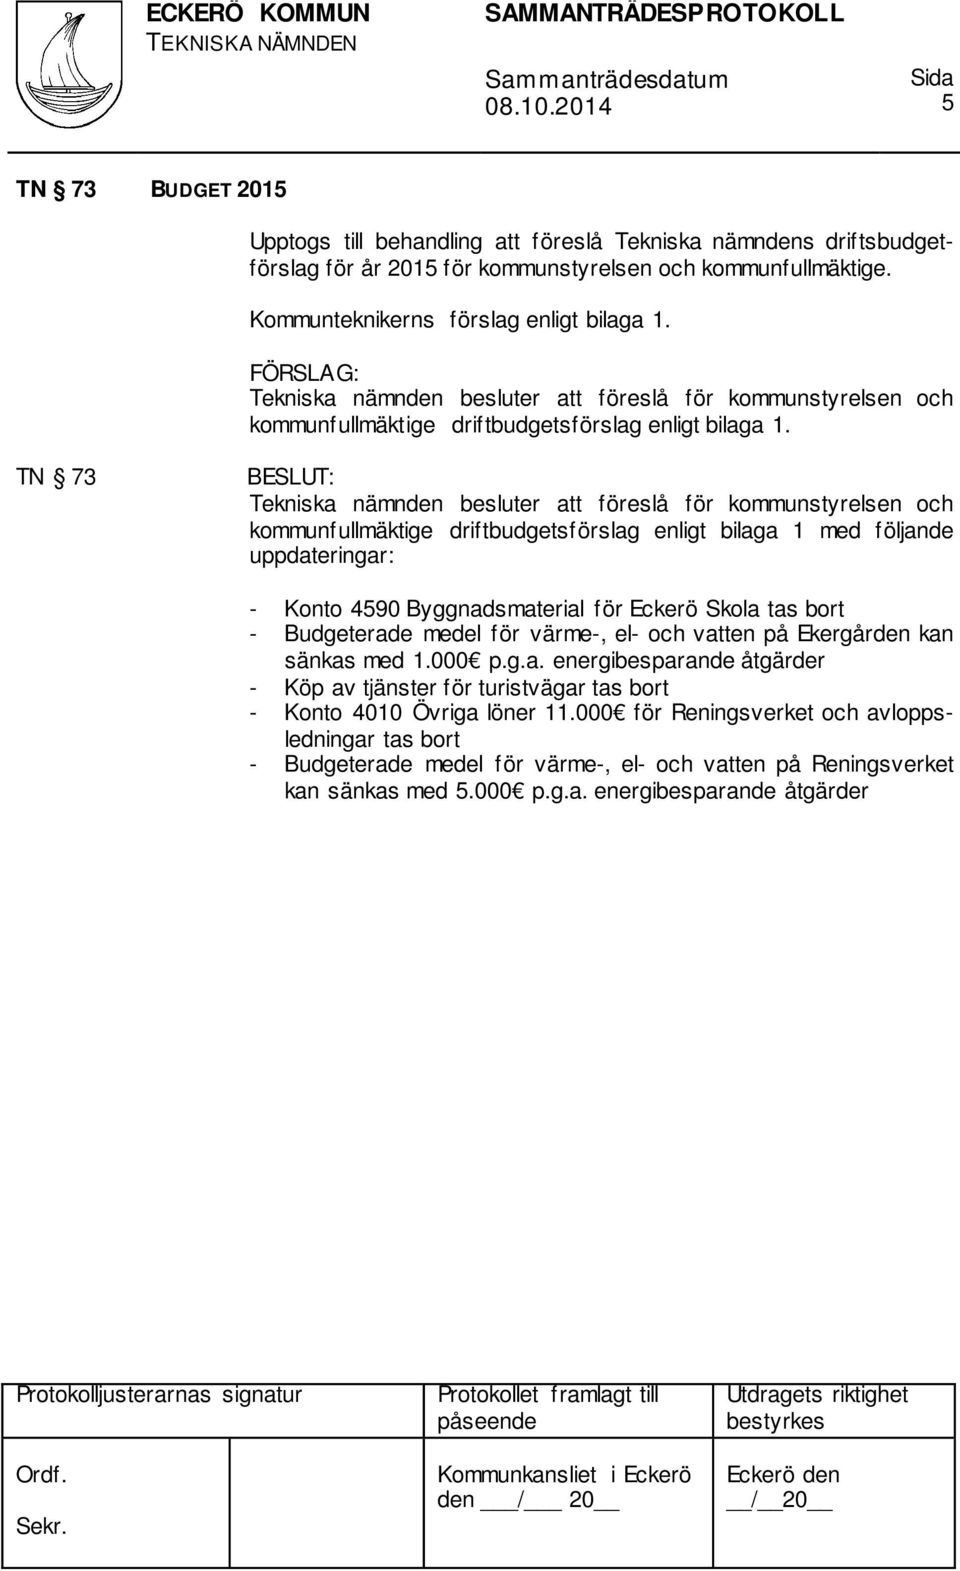 TN 73 Tekniska nämnden besluter att föreslå för kommunstyrelsen och kommunfullmäktige driftbudgetsförslag enligt bilaga 1 med följande uppdateringar: - Konto 4590 Byggnadsmaterial för Eckerö Skola